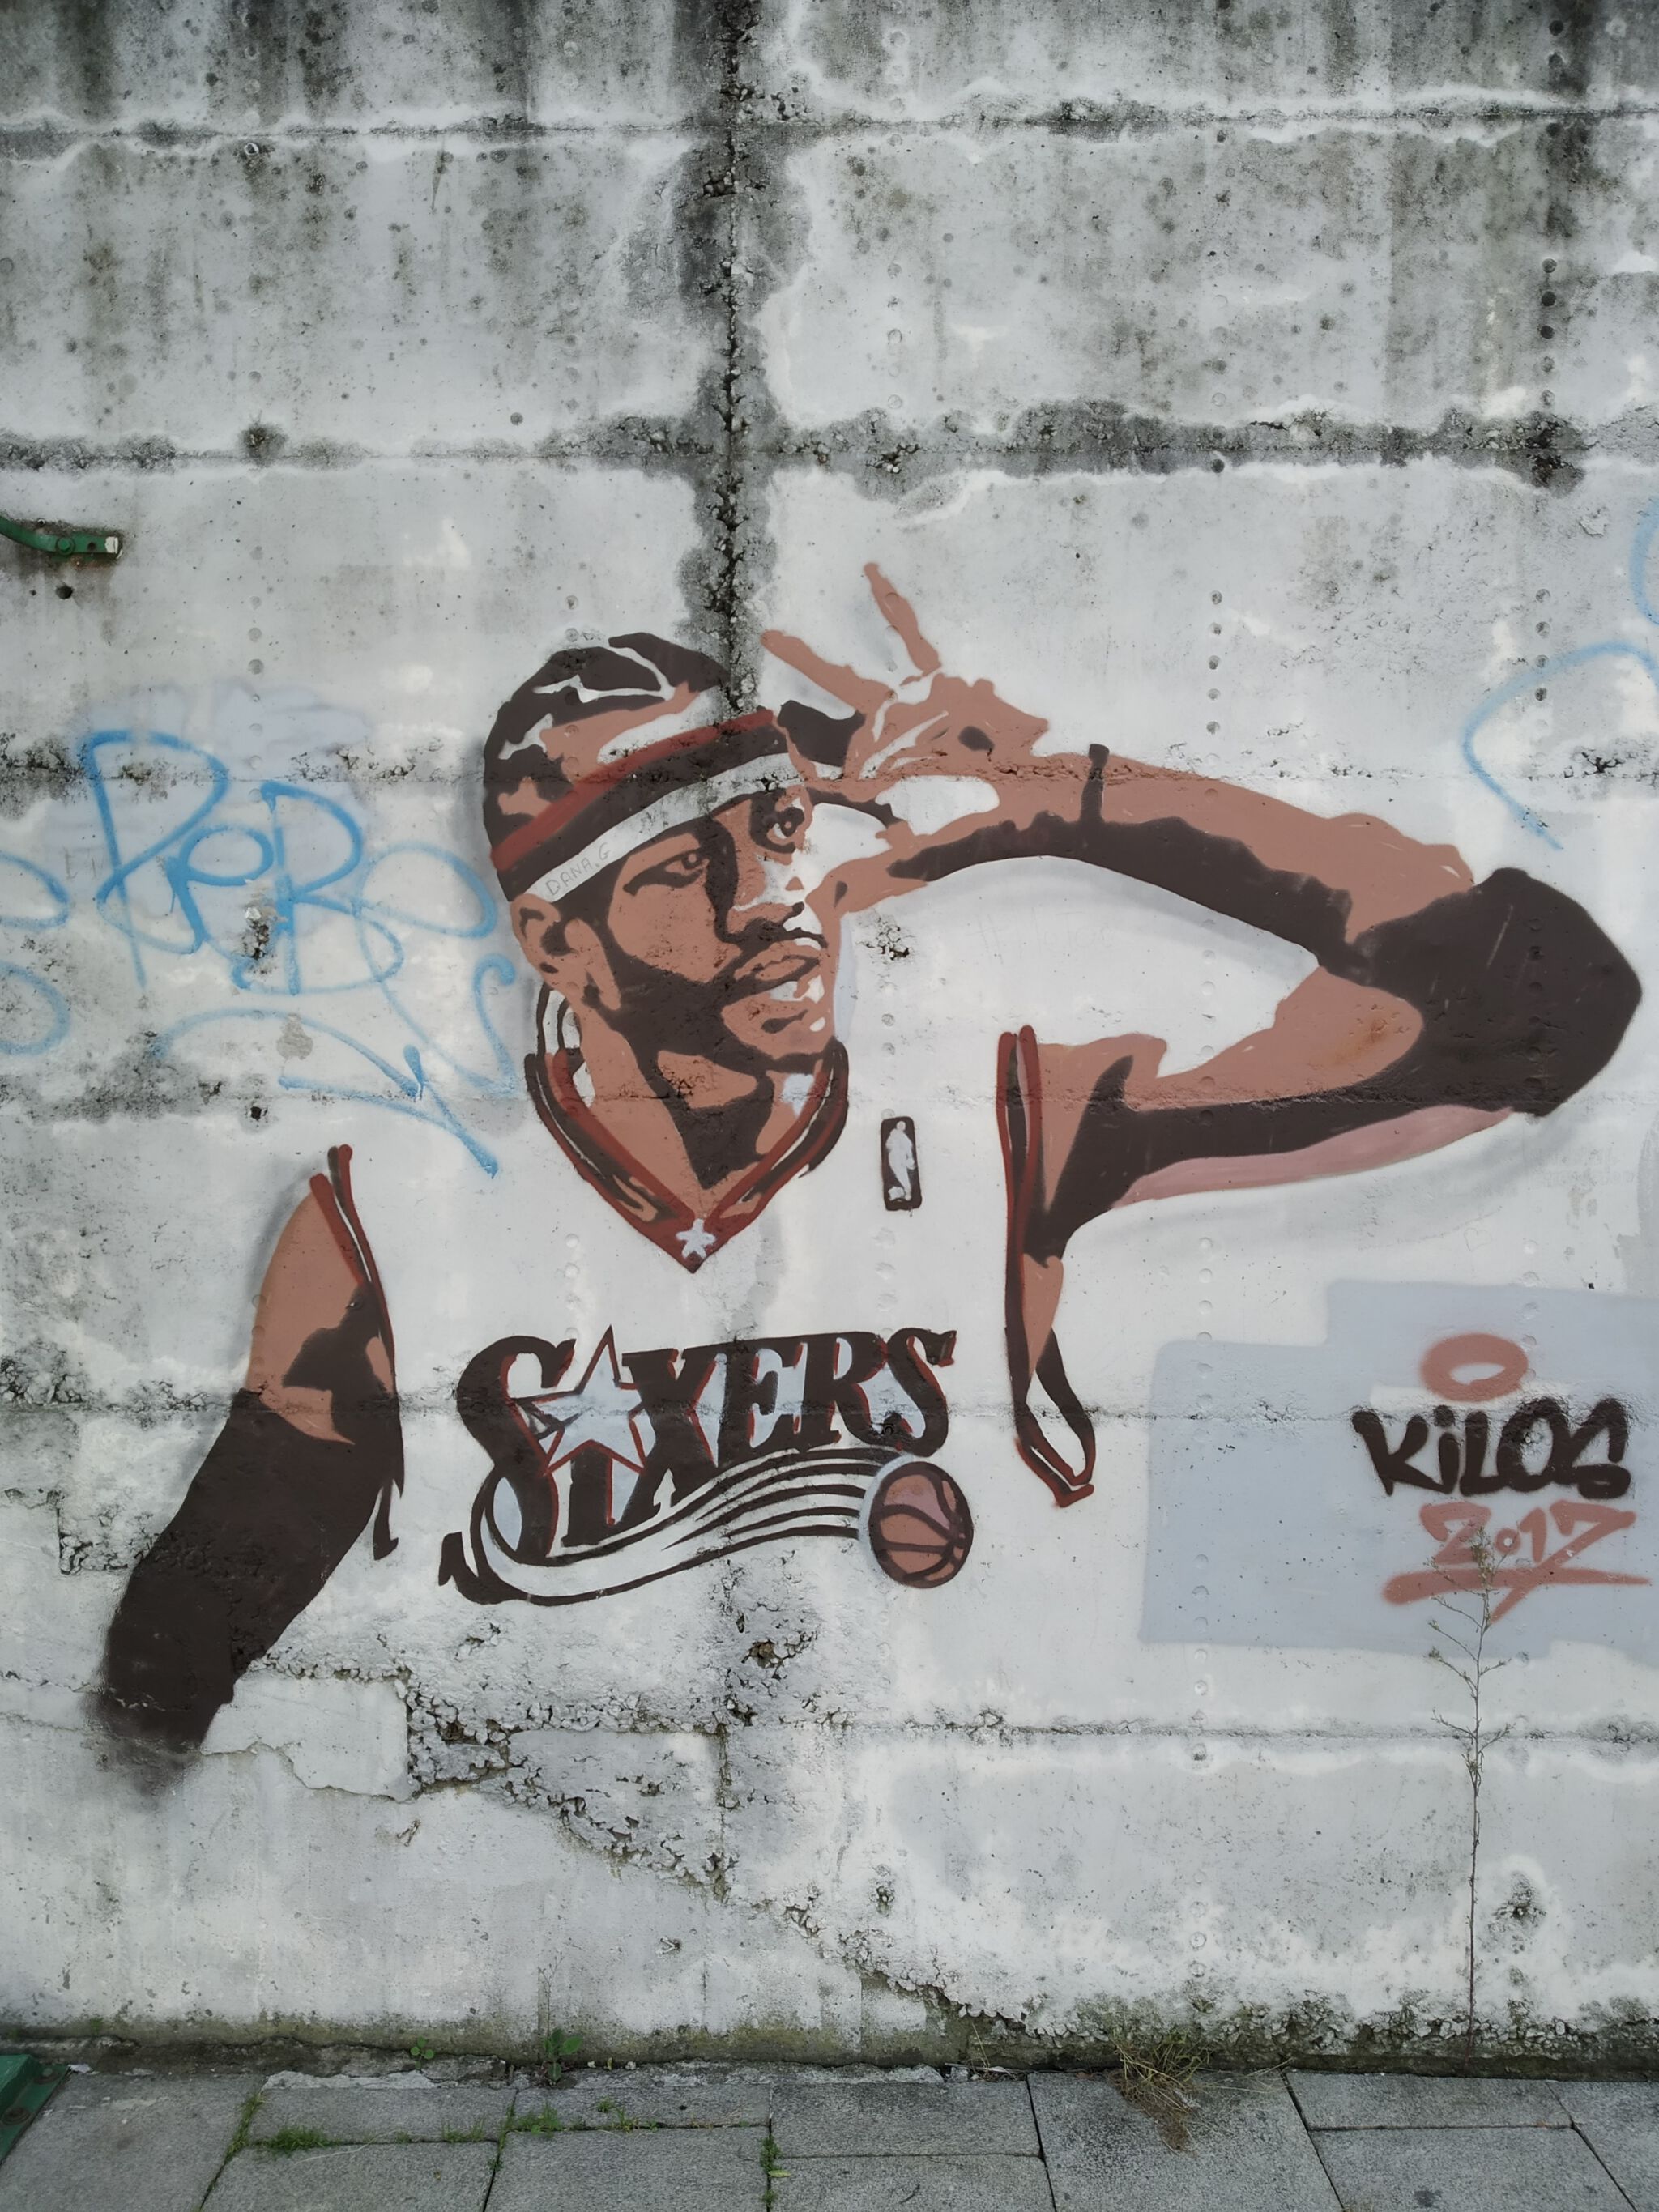 Untitled by Kilos graffiti - Street Art Cities